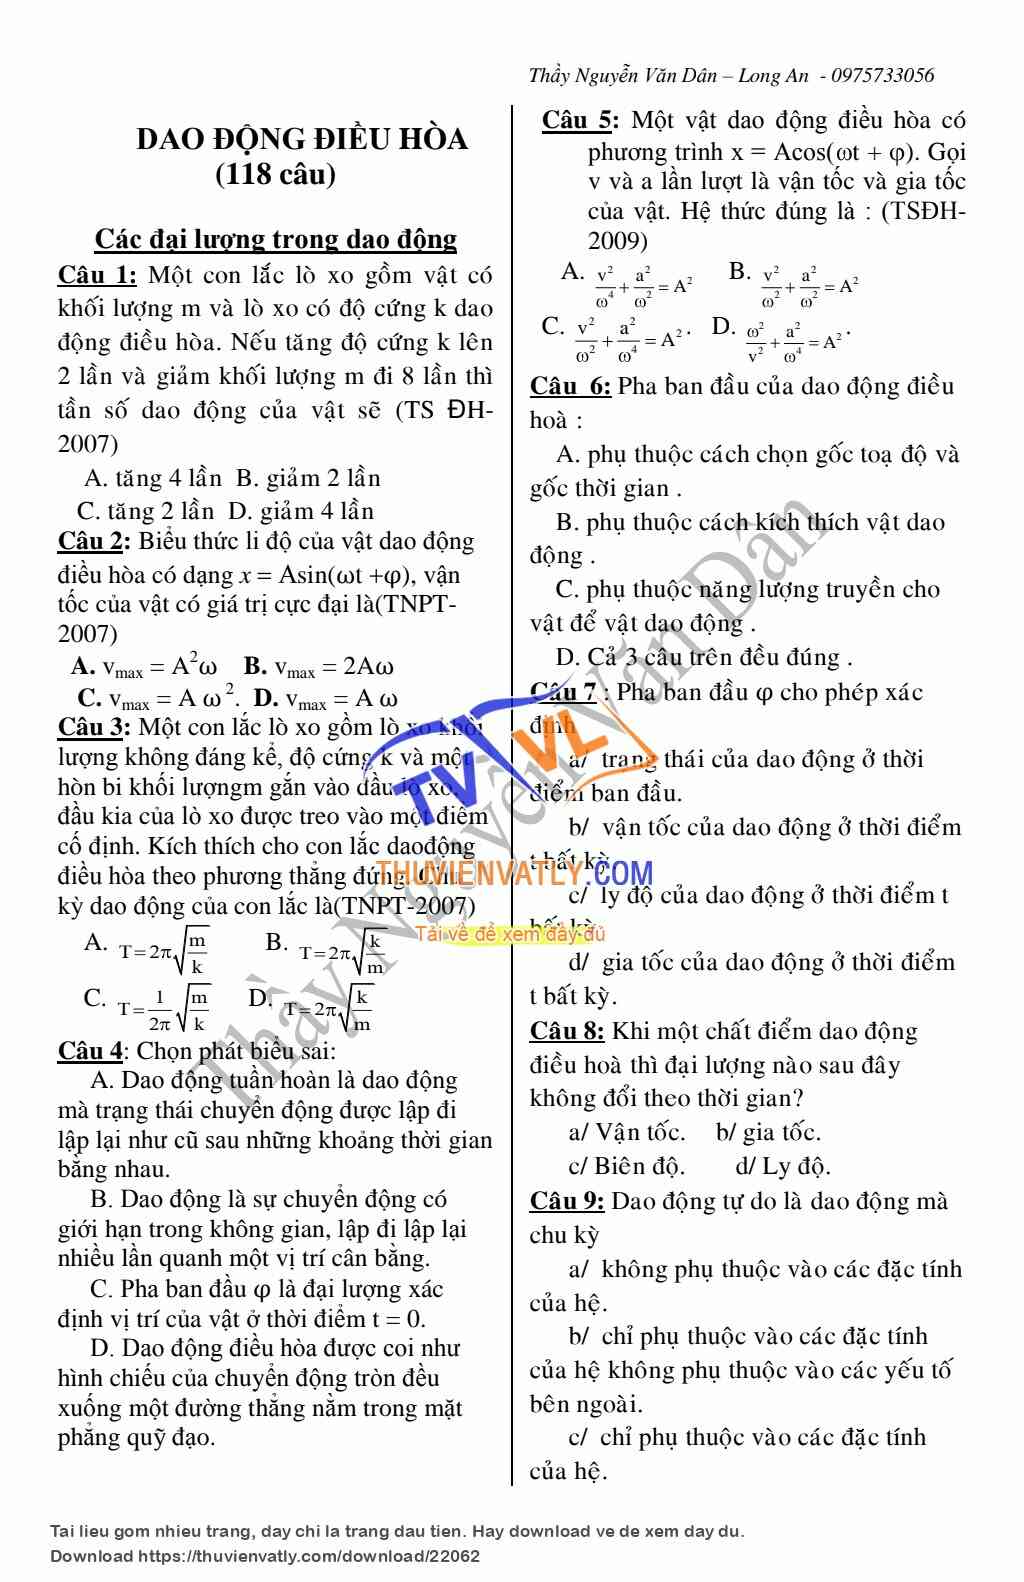 600 câu trắc nghiệm lý thuyết Vật lý 12. có phân dạng và đáp án